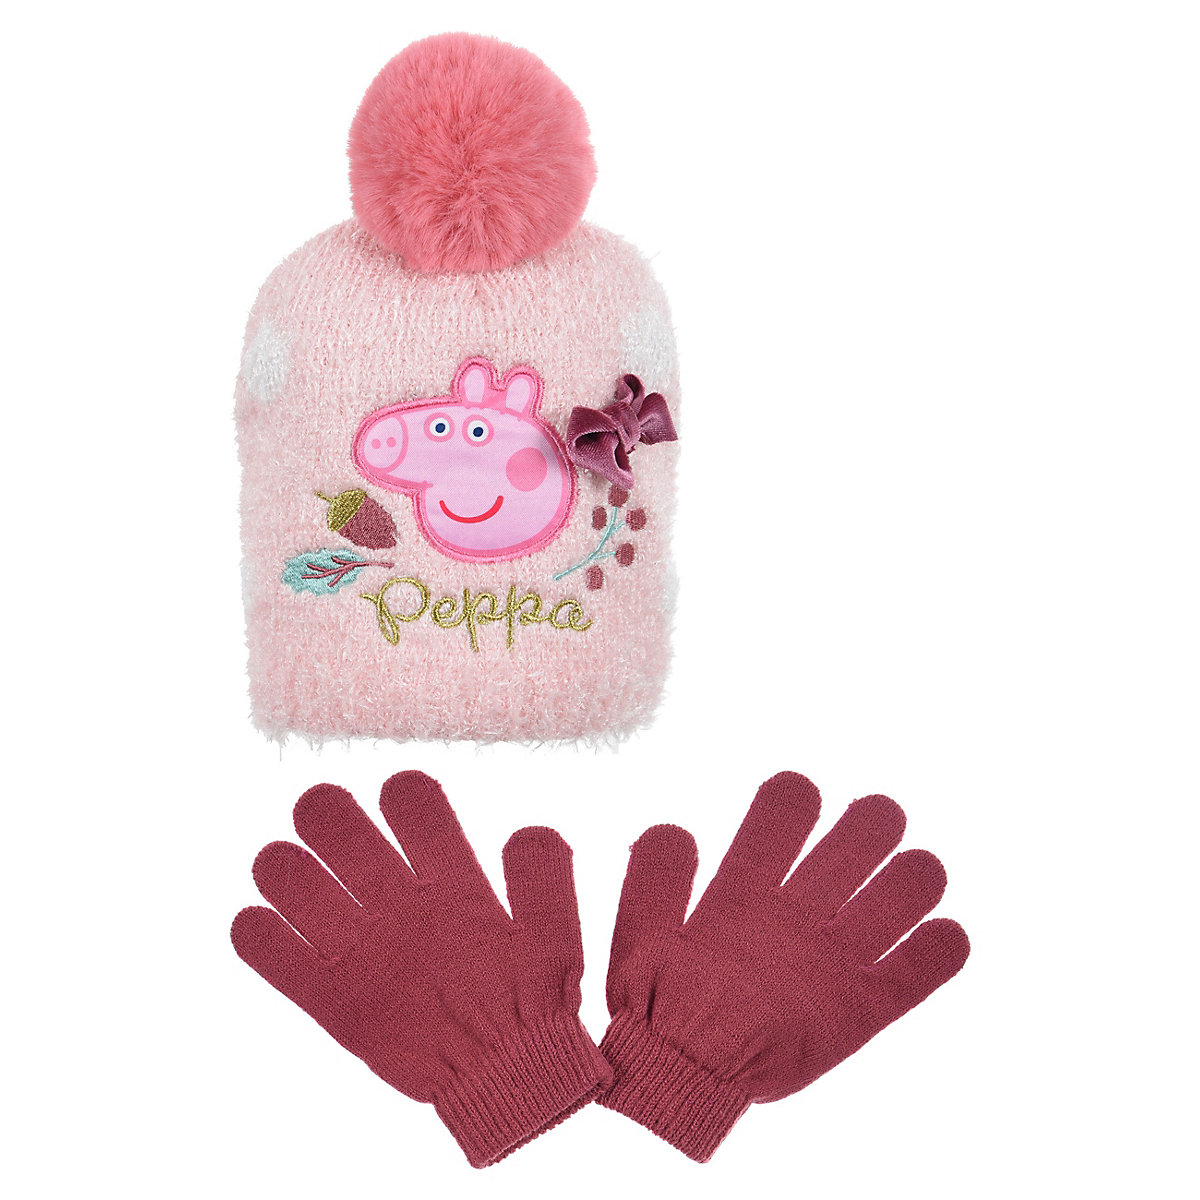 Peppa Pig Peppa Wutz Pig Kinder Mädchen Winter-Set Winter-Mütze Handschuhe rosa